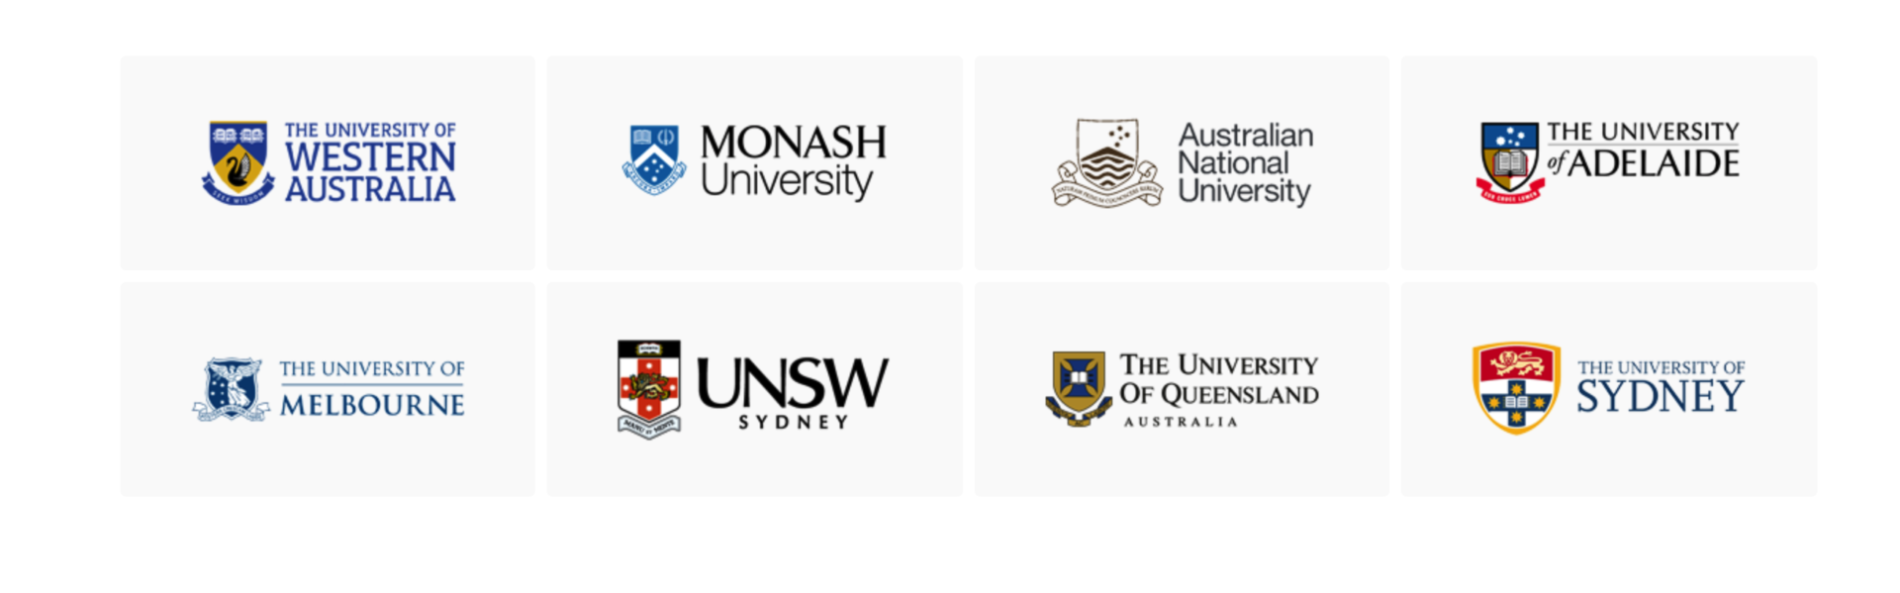 Danh sách các trường thuộc Go8 - các trường đại học hàng đầu tại Úc.